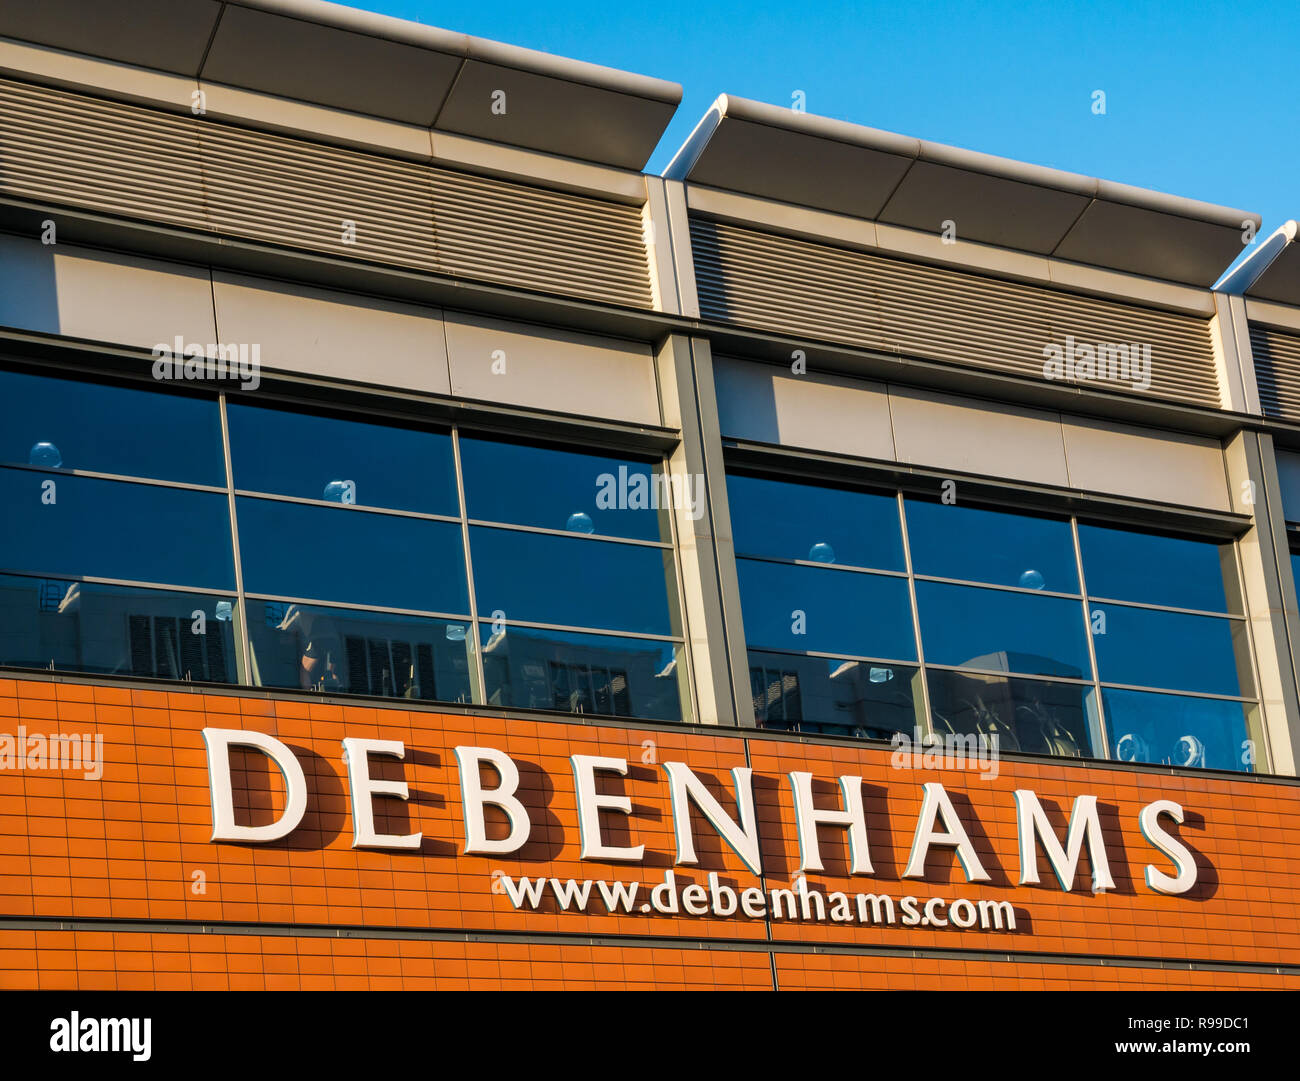 Debenhams nom du magasin et site Internet sur le centre commercial Ocean terminal avec gymnase au-dessus, Leith, Edinburgh, Écosse, Royaume-Uni Banque D'Images